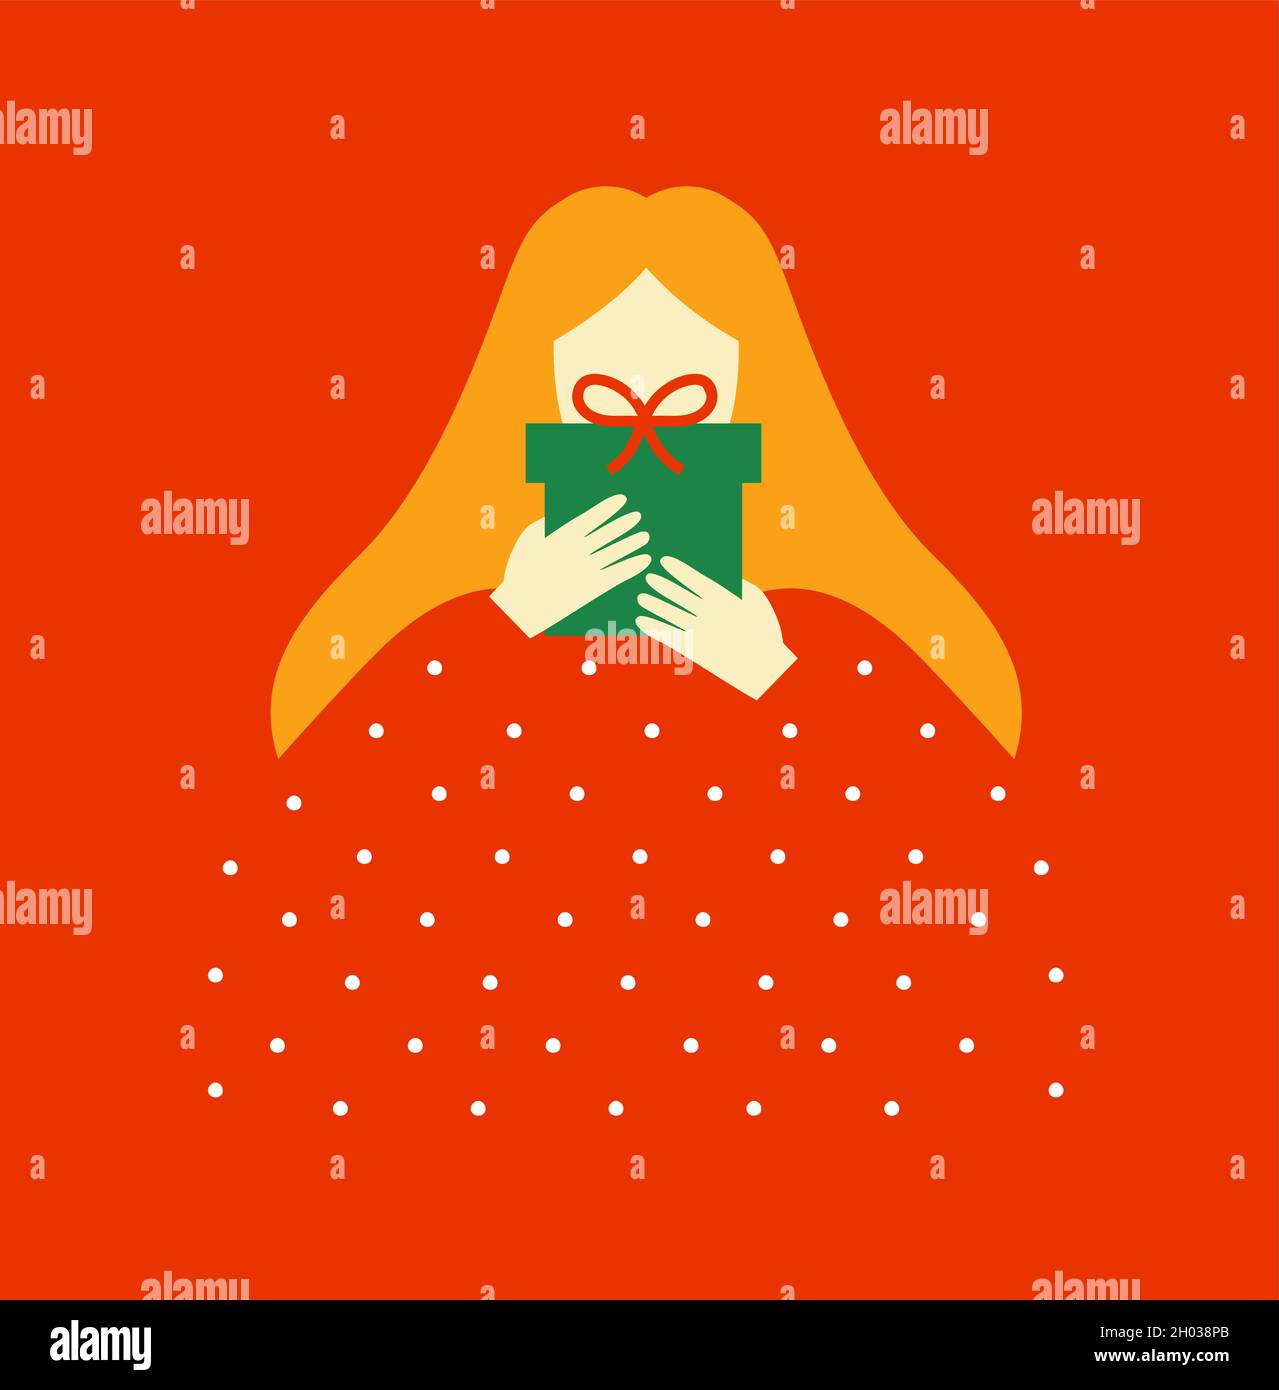 Moderne flache Frau Charakter hält weihnachtsgeschenk in minimalistischen Cartoon-Stil. Abstraktes Weihnachtsfeiertagsillustrationskonzept auf isoliertem Hintergrund. Stock Vektor